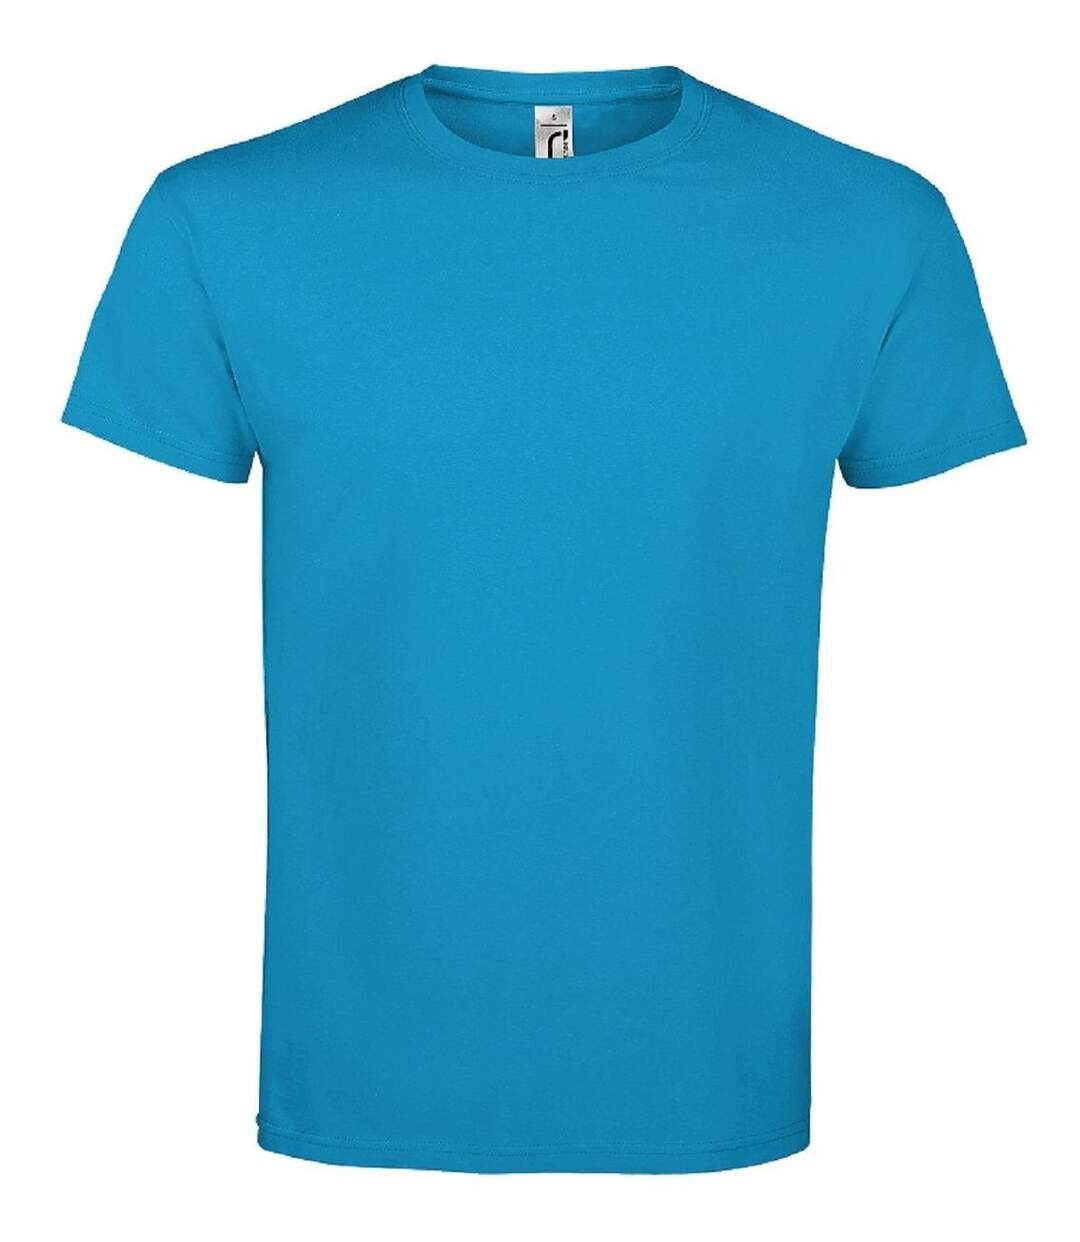 T-shirt manches courtes - Mixte - 11500 - bleu aqua